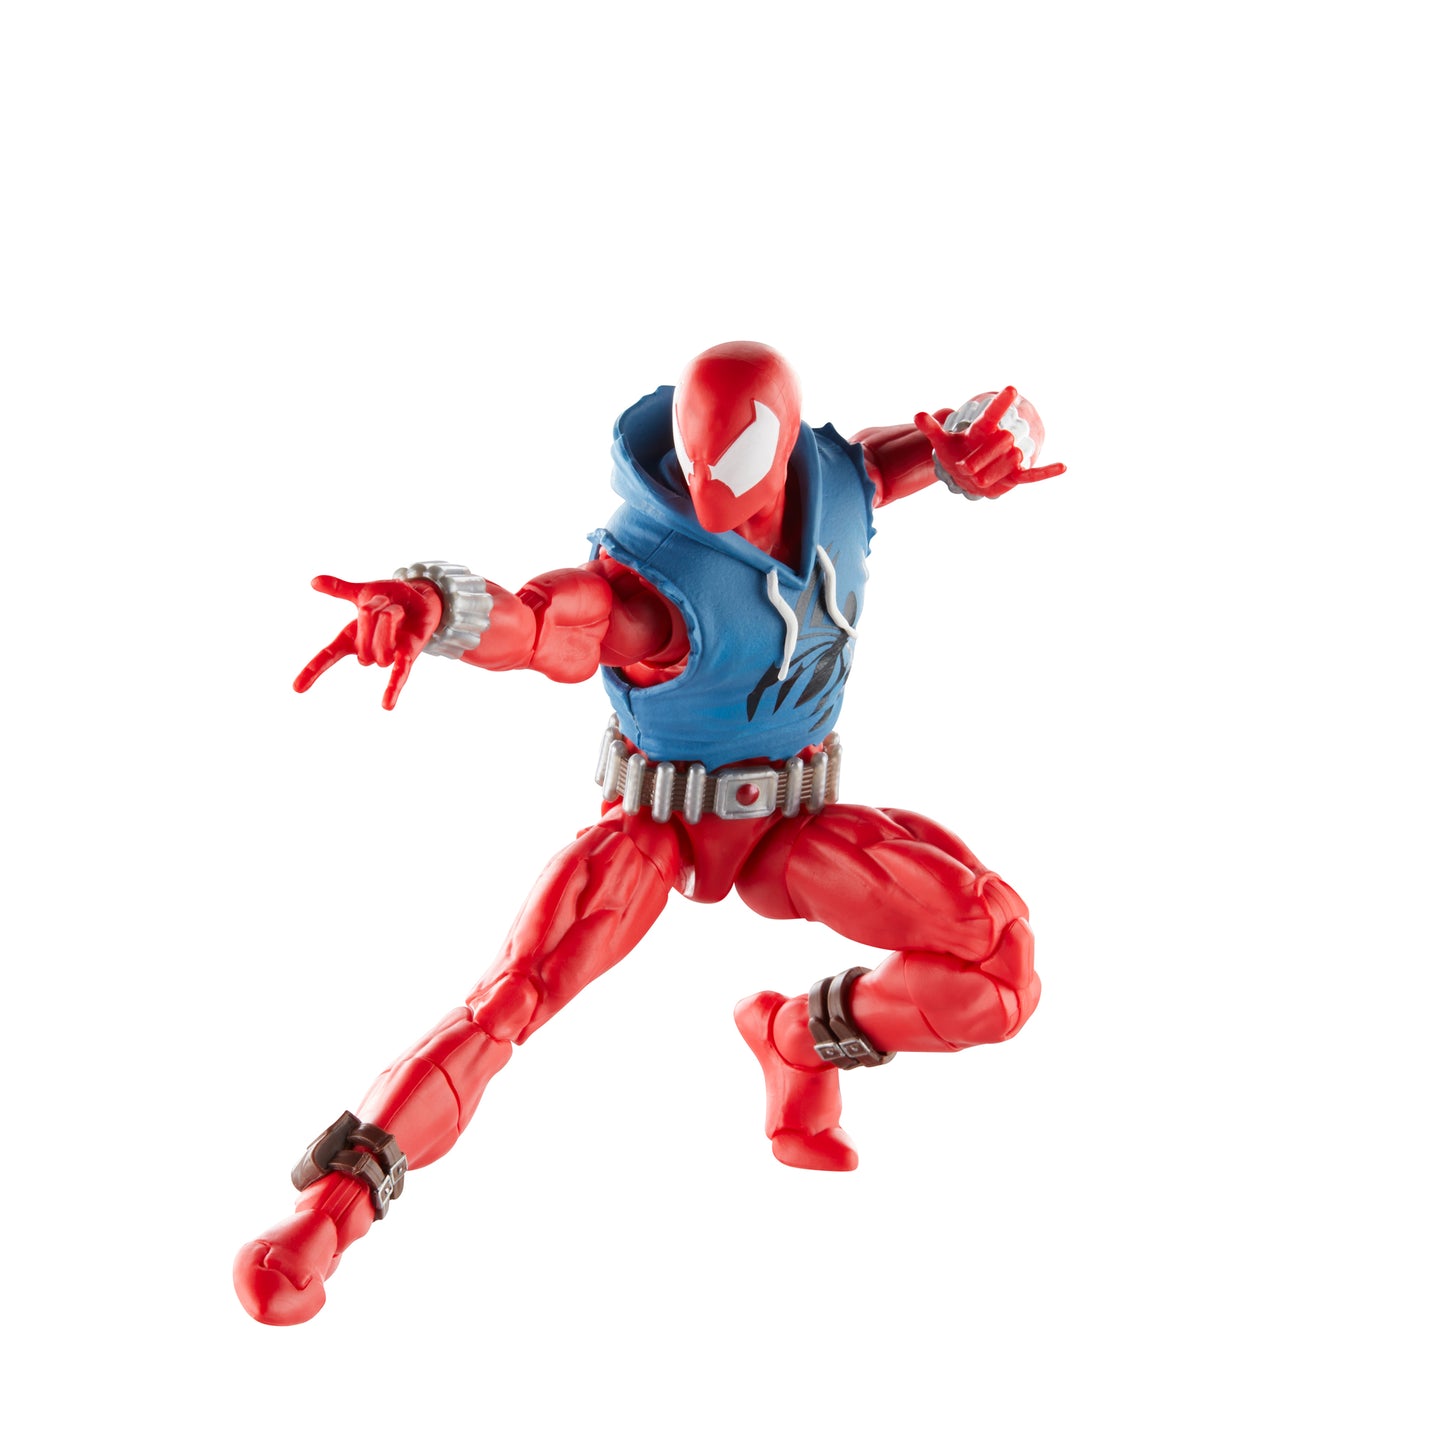 Marvel Legends Series Scarlet Spider Action Figure Toy